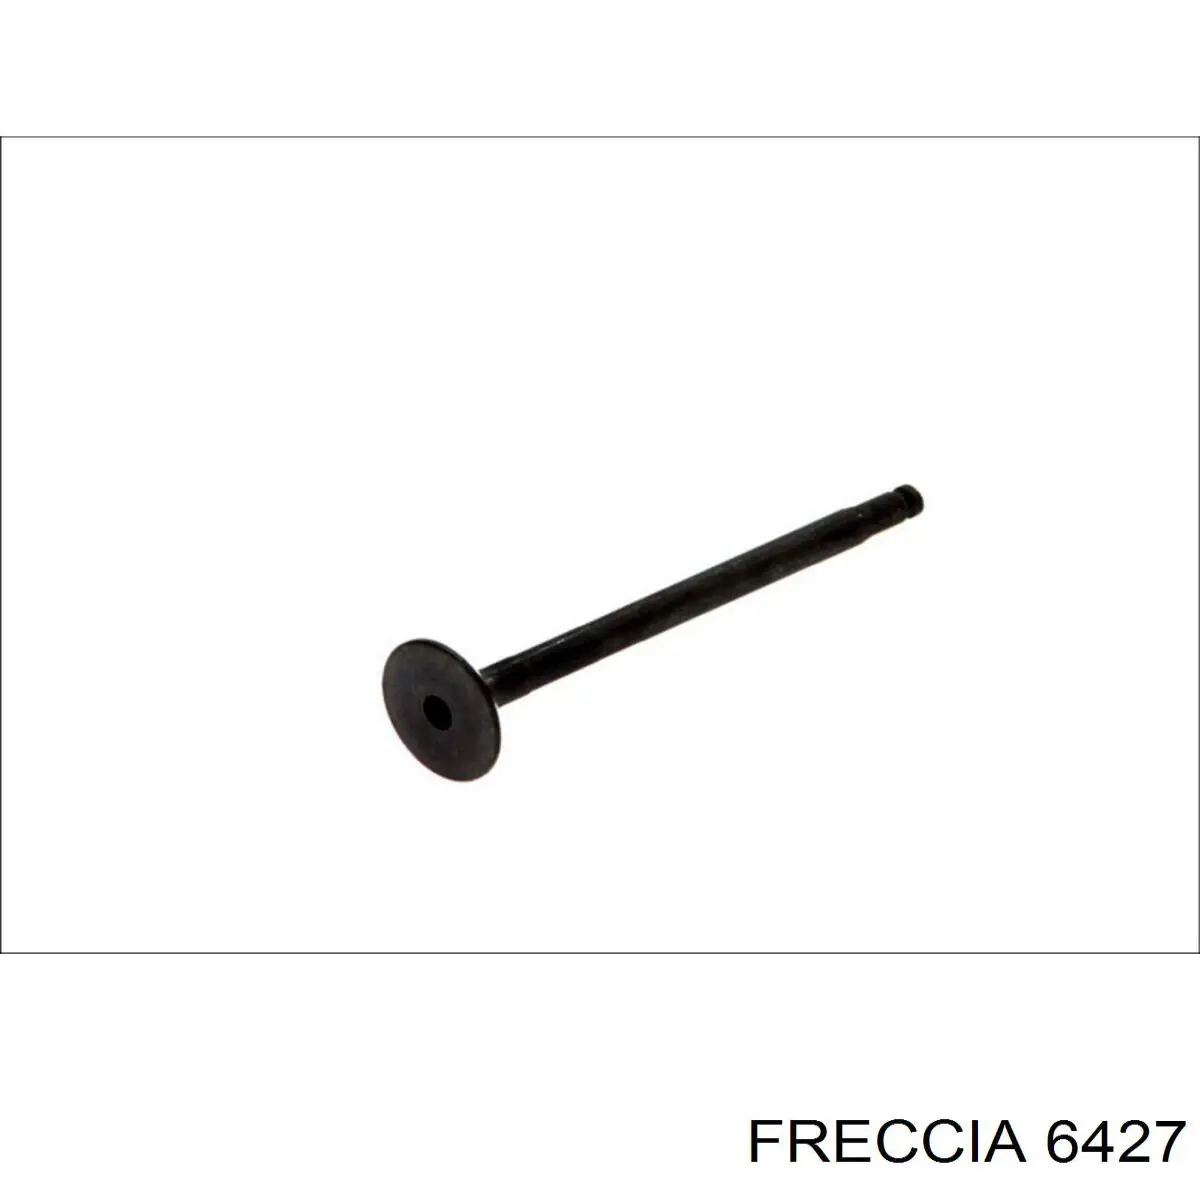 6427 Freccia клапан выпускной